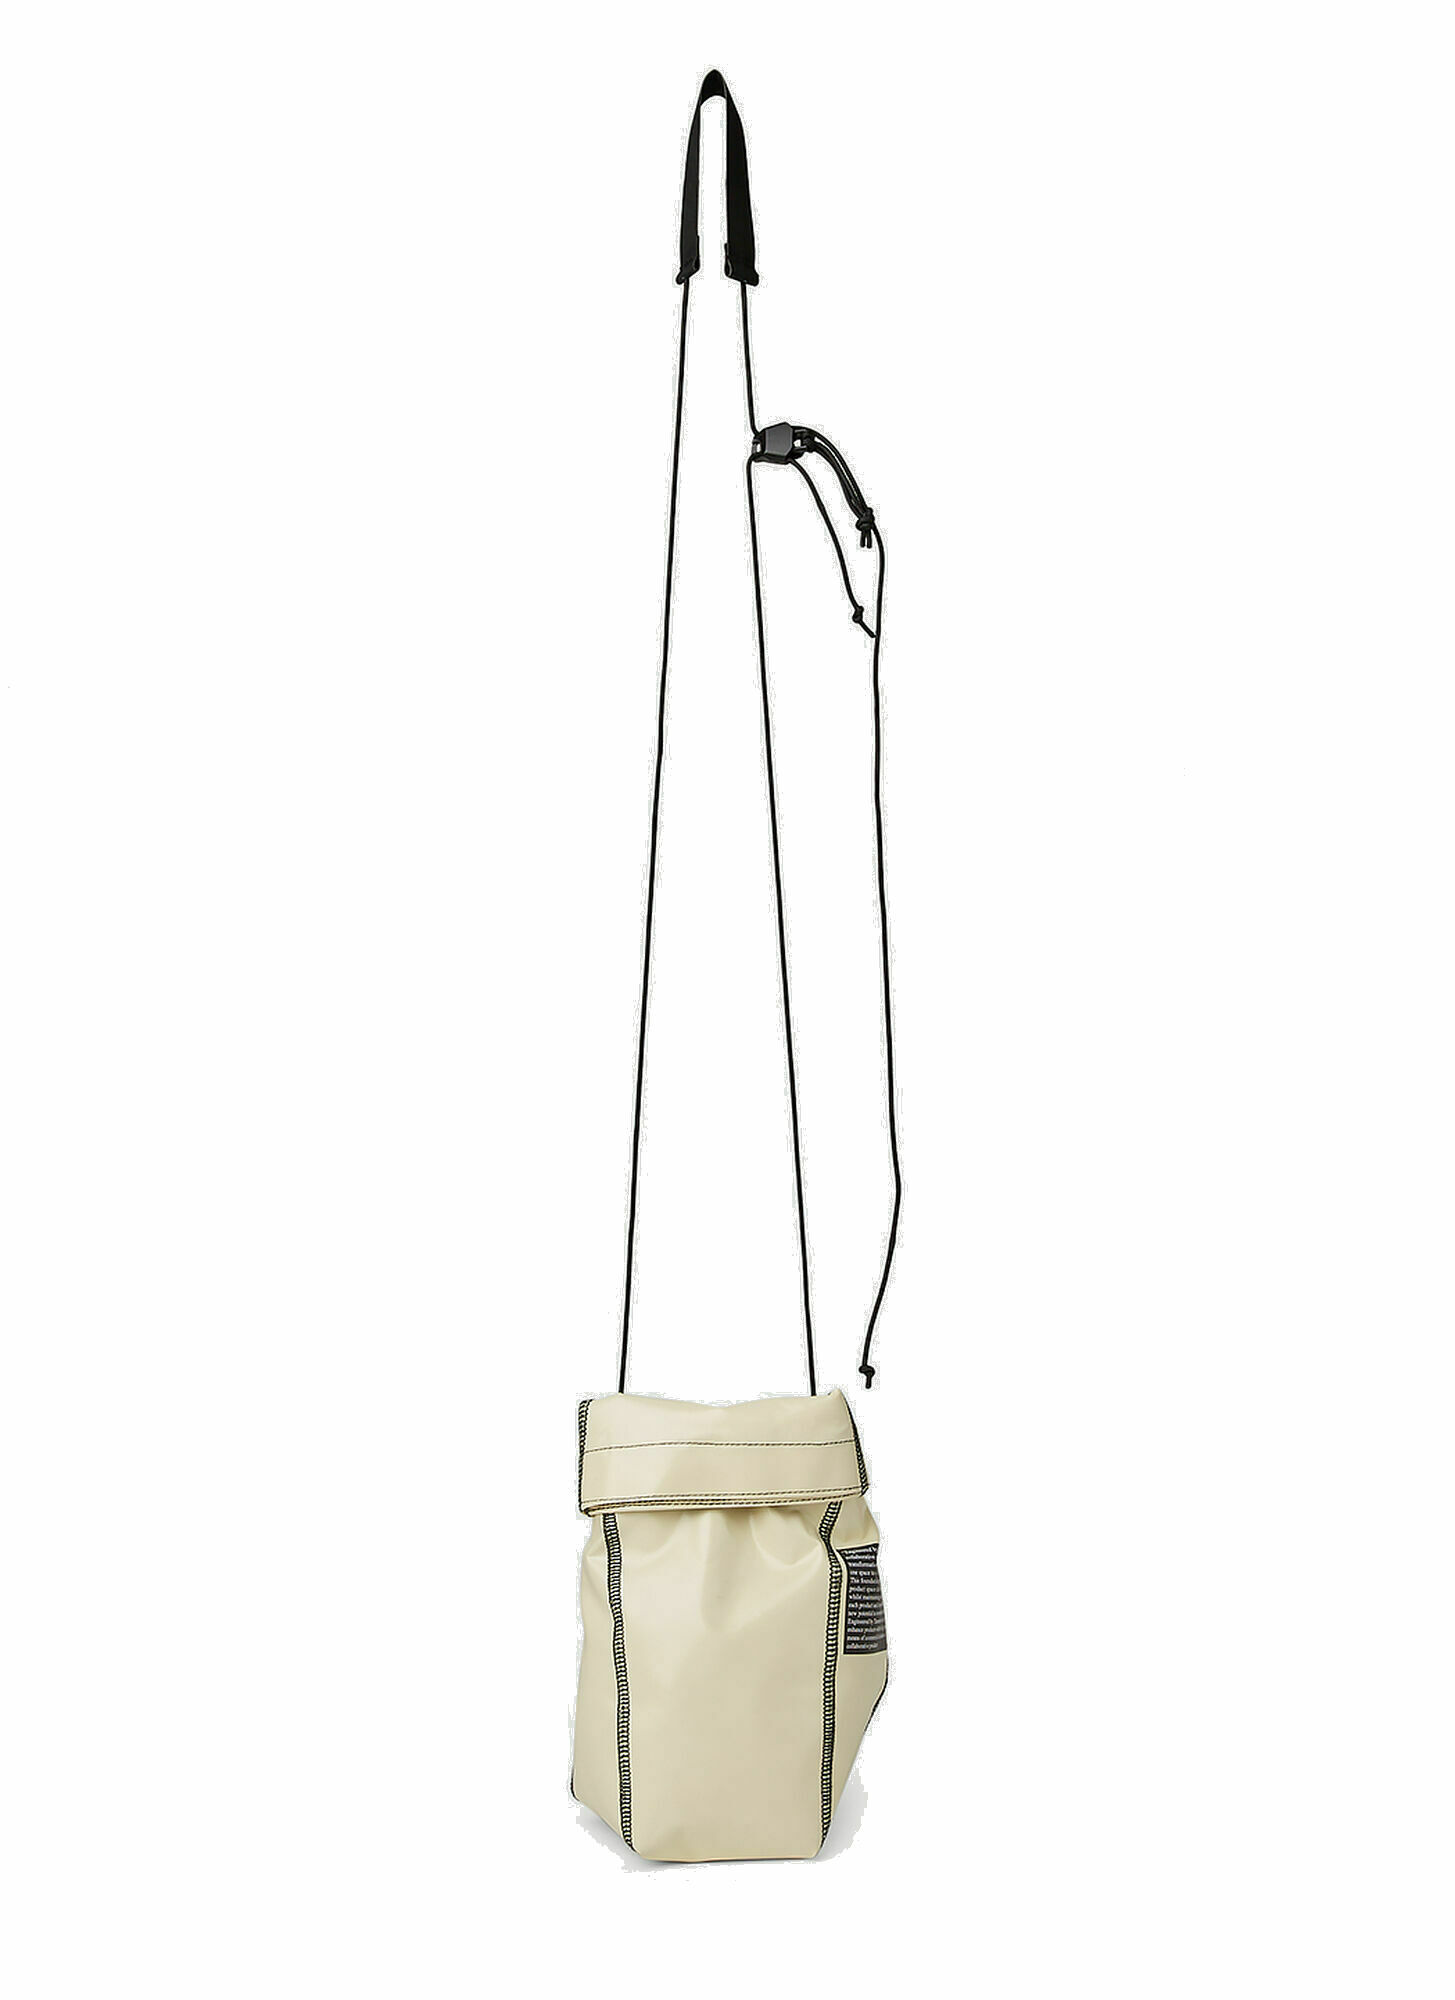 BF Dry Sack Crossbody Bag in Cream GR10K